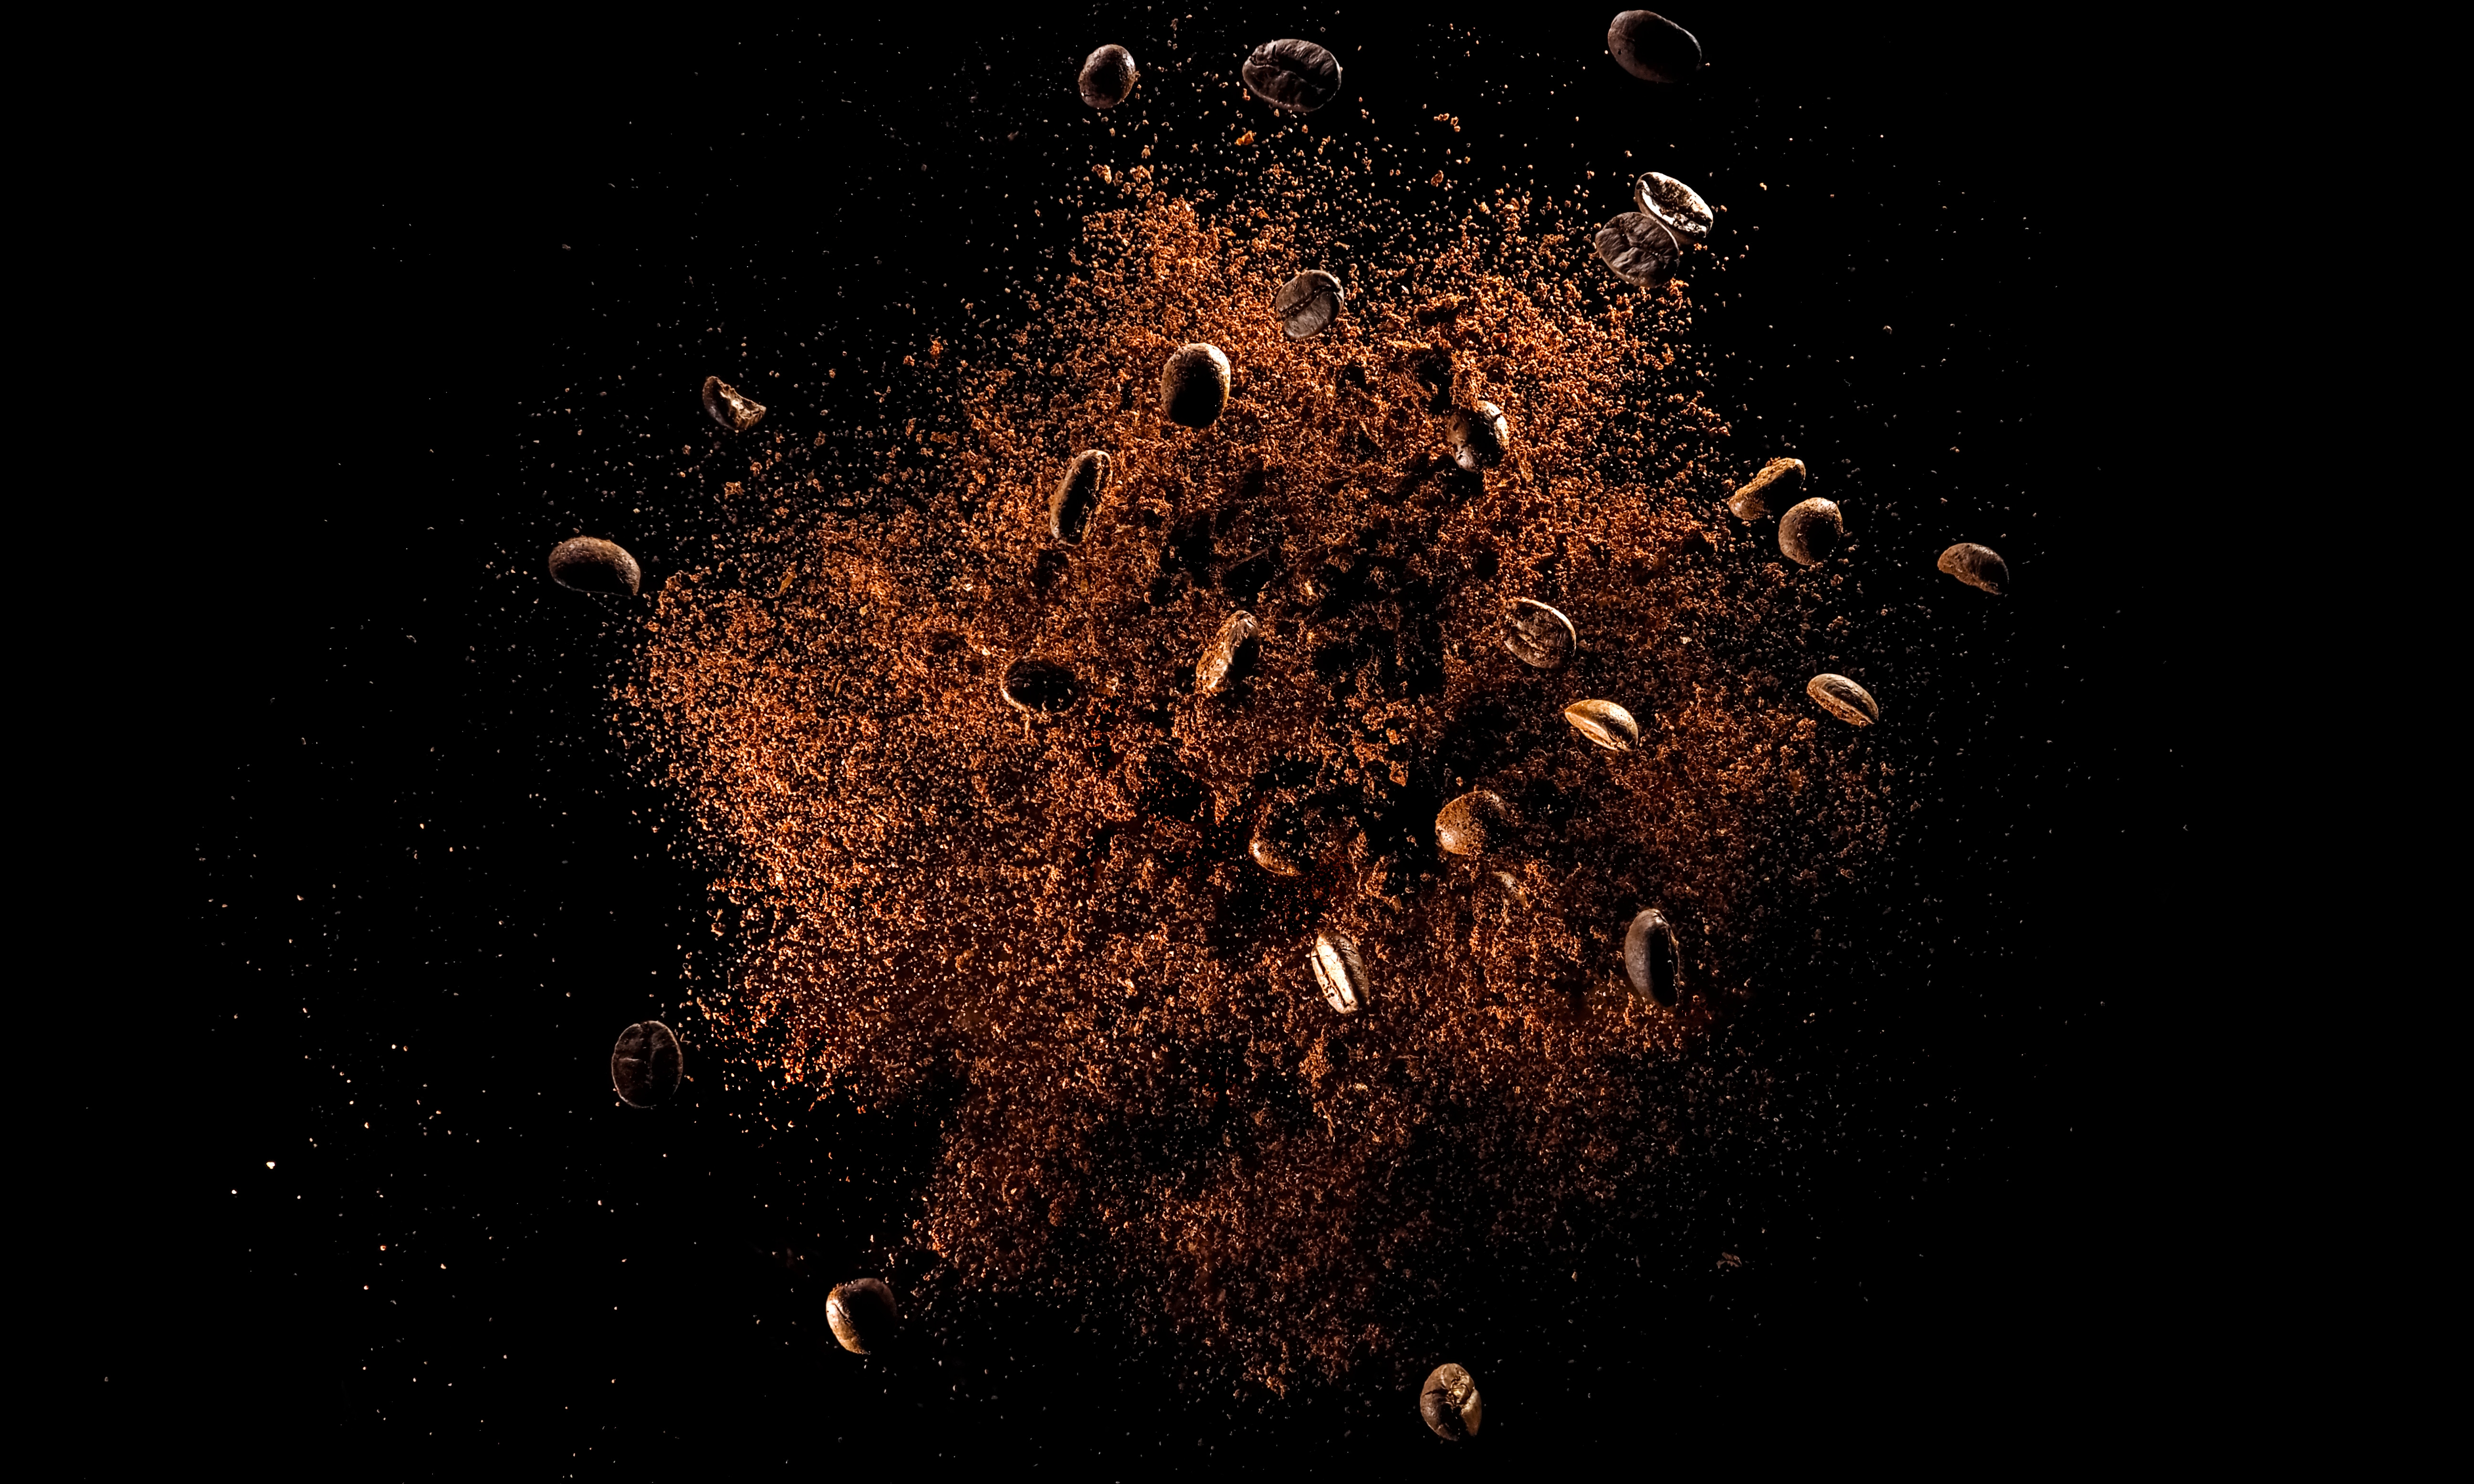 Kaffebohnen in Nahaufnahme, frisch geröstet und bereit für die Zubereitung - ein Sinnbild für die weltweite Liebe zum Kaffee.